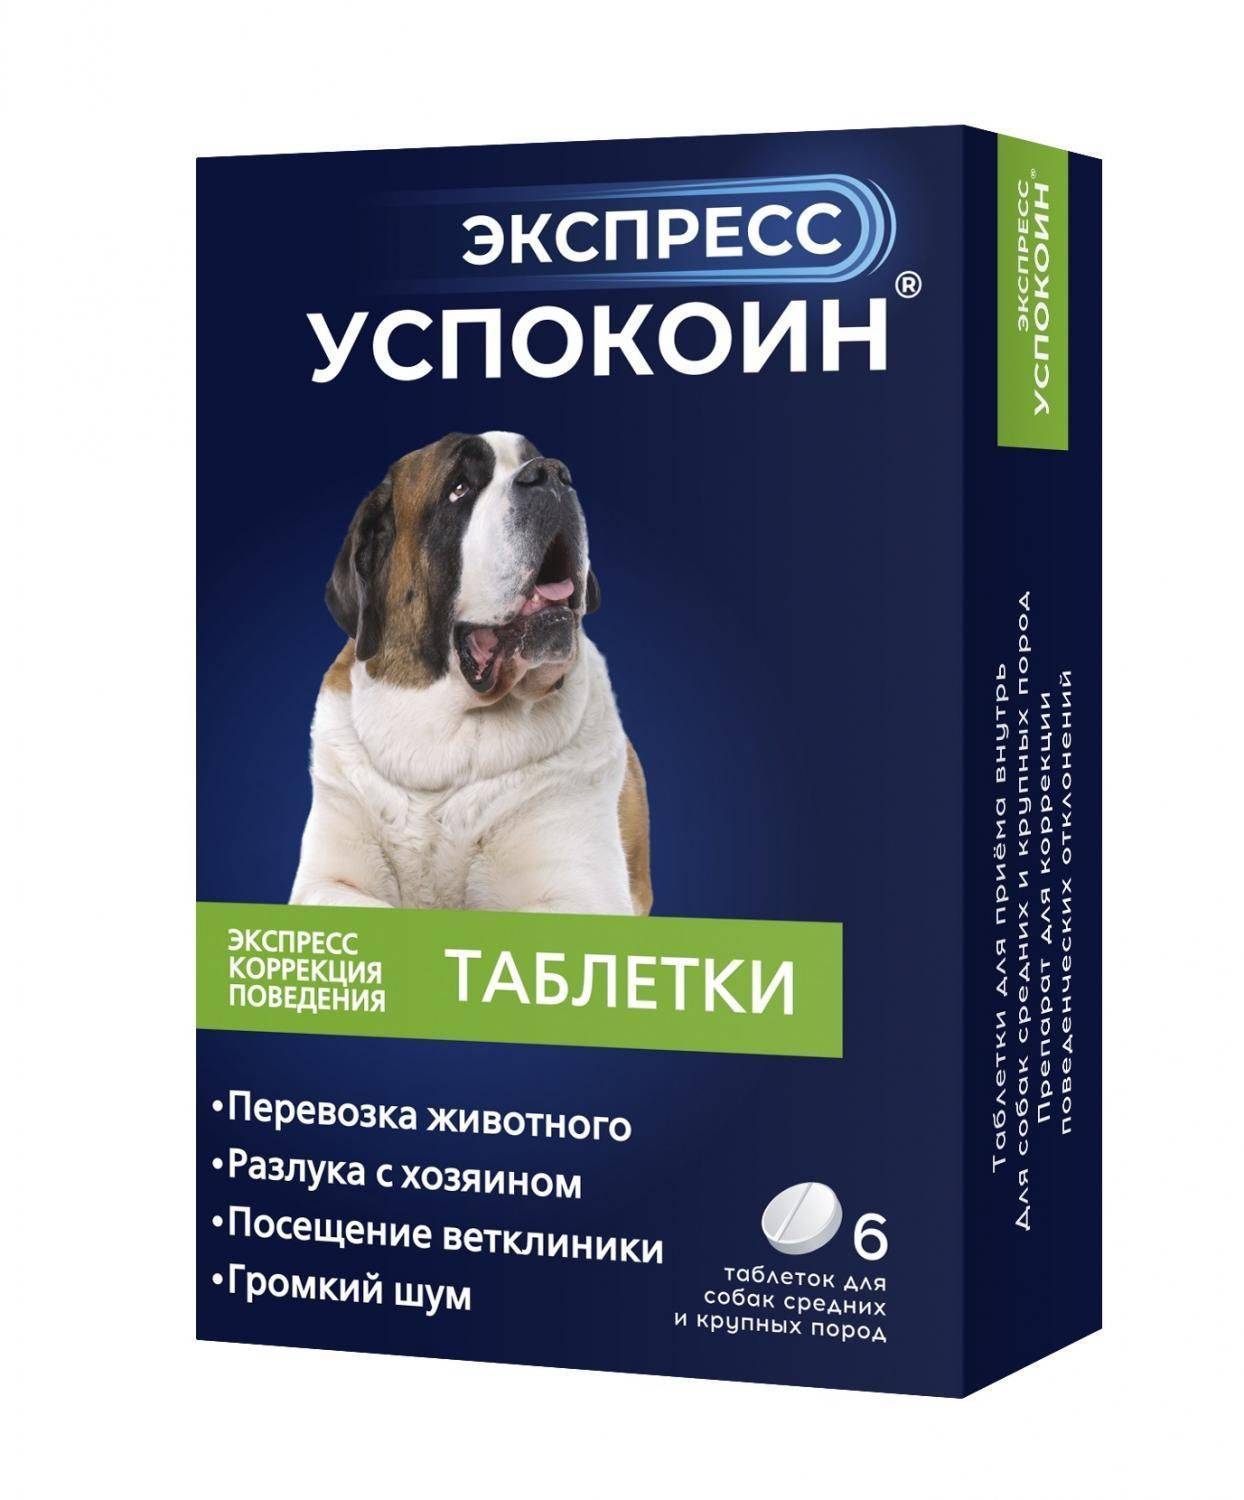 Успокоительные для собаки: обзор препаратов, когда применять